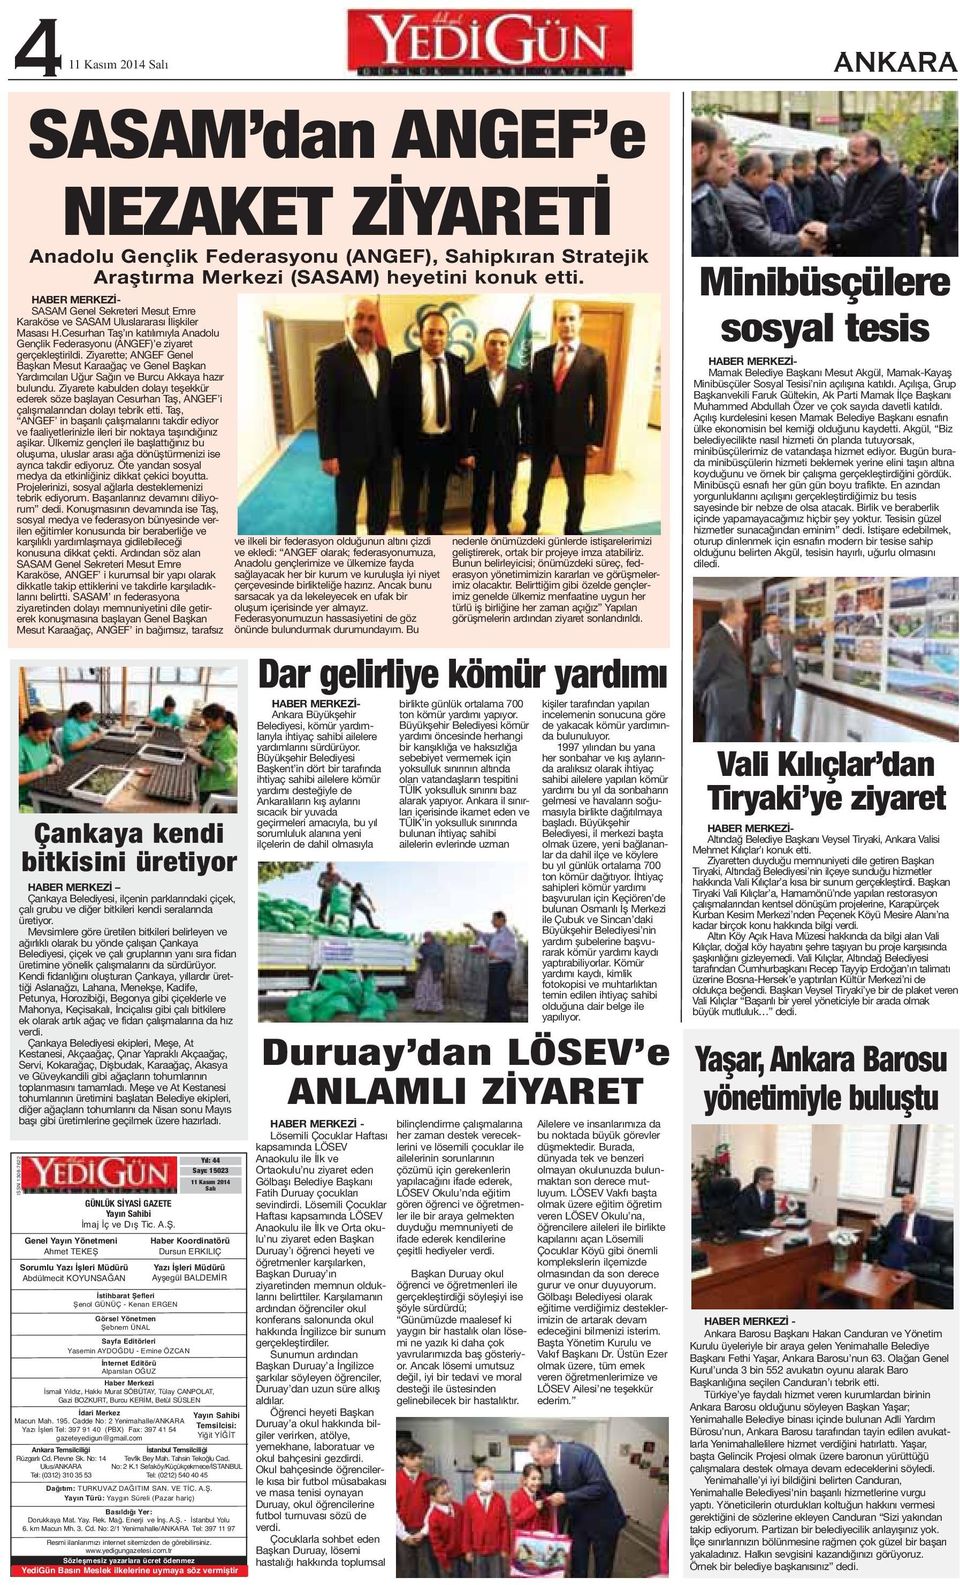 Ziyarette; ANGEF Genel Başkan Mesut Karaağaç ve Genel Başkan Yardımcıları Uğur Sağın ve Burcu Akkaya hazır bulundu.